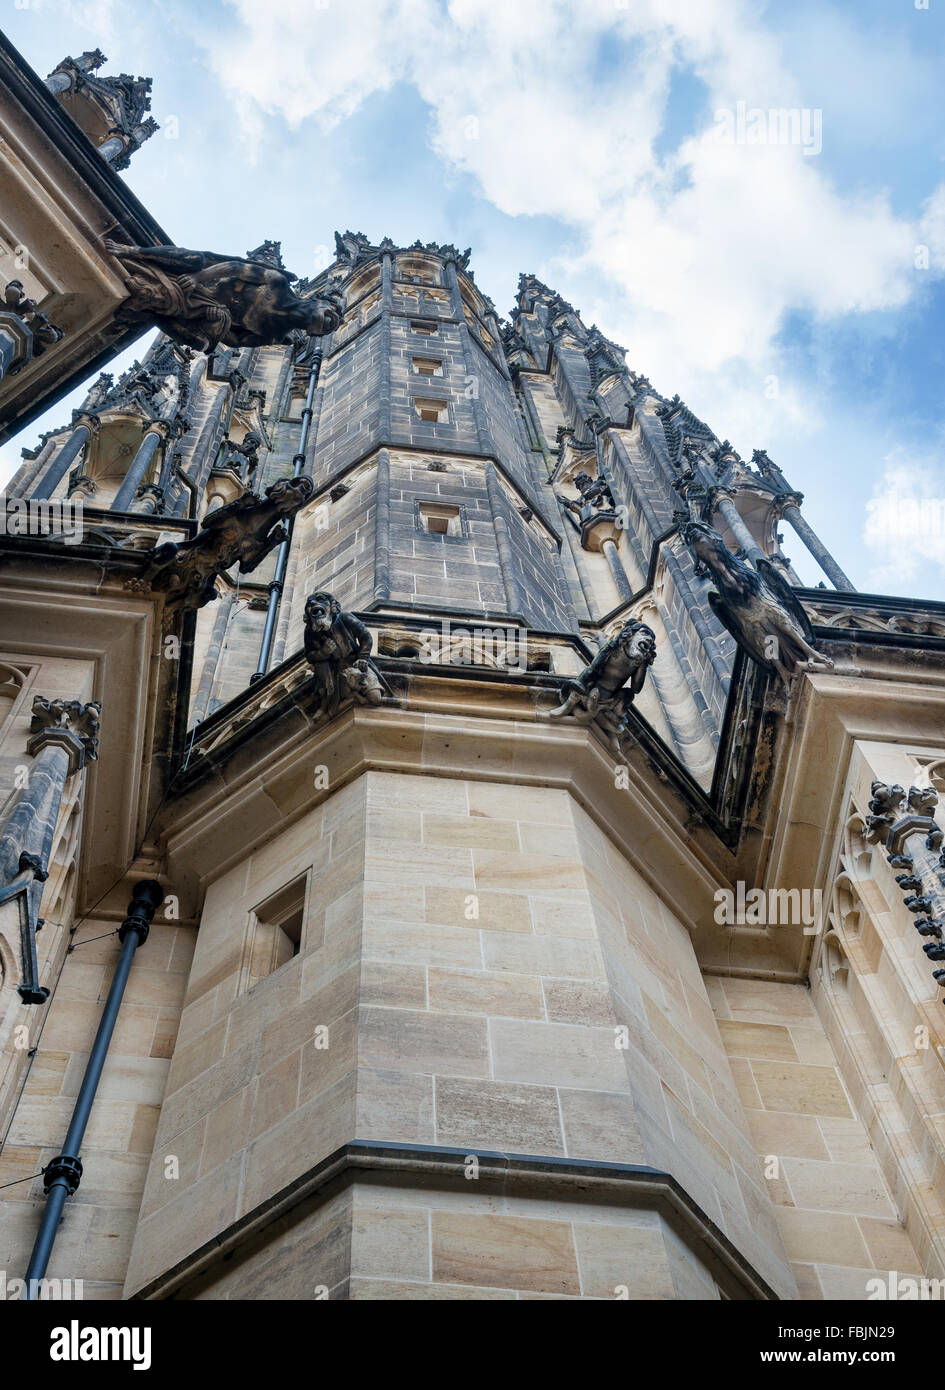 Vue de la cathédrale Saint-Guy de Prague, en République tchèque. Banque D'Images